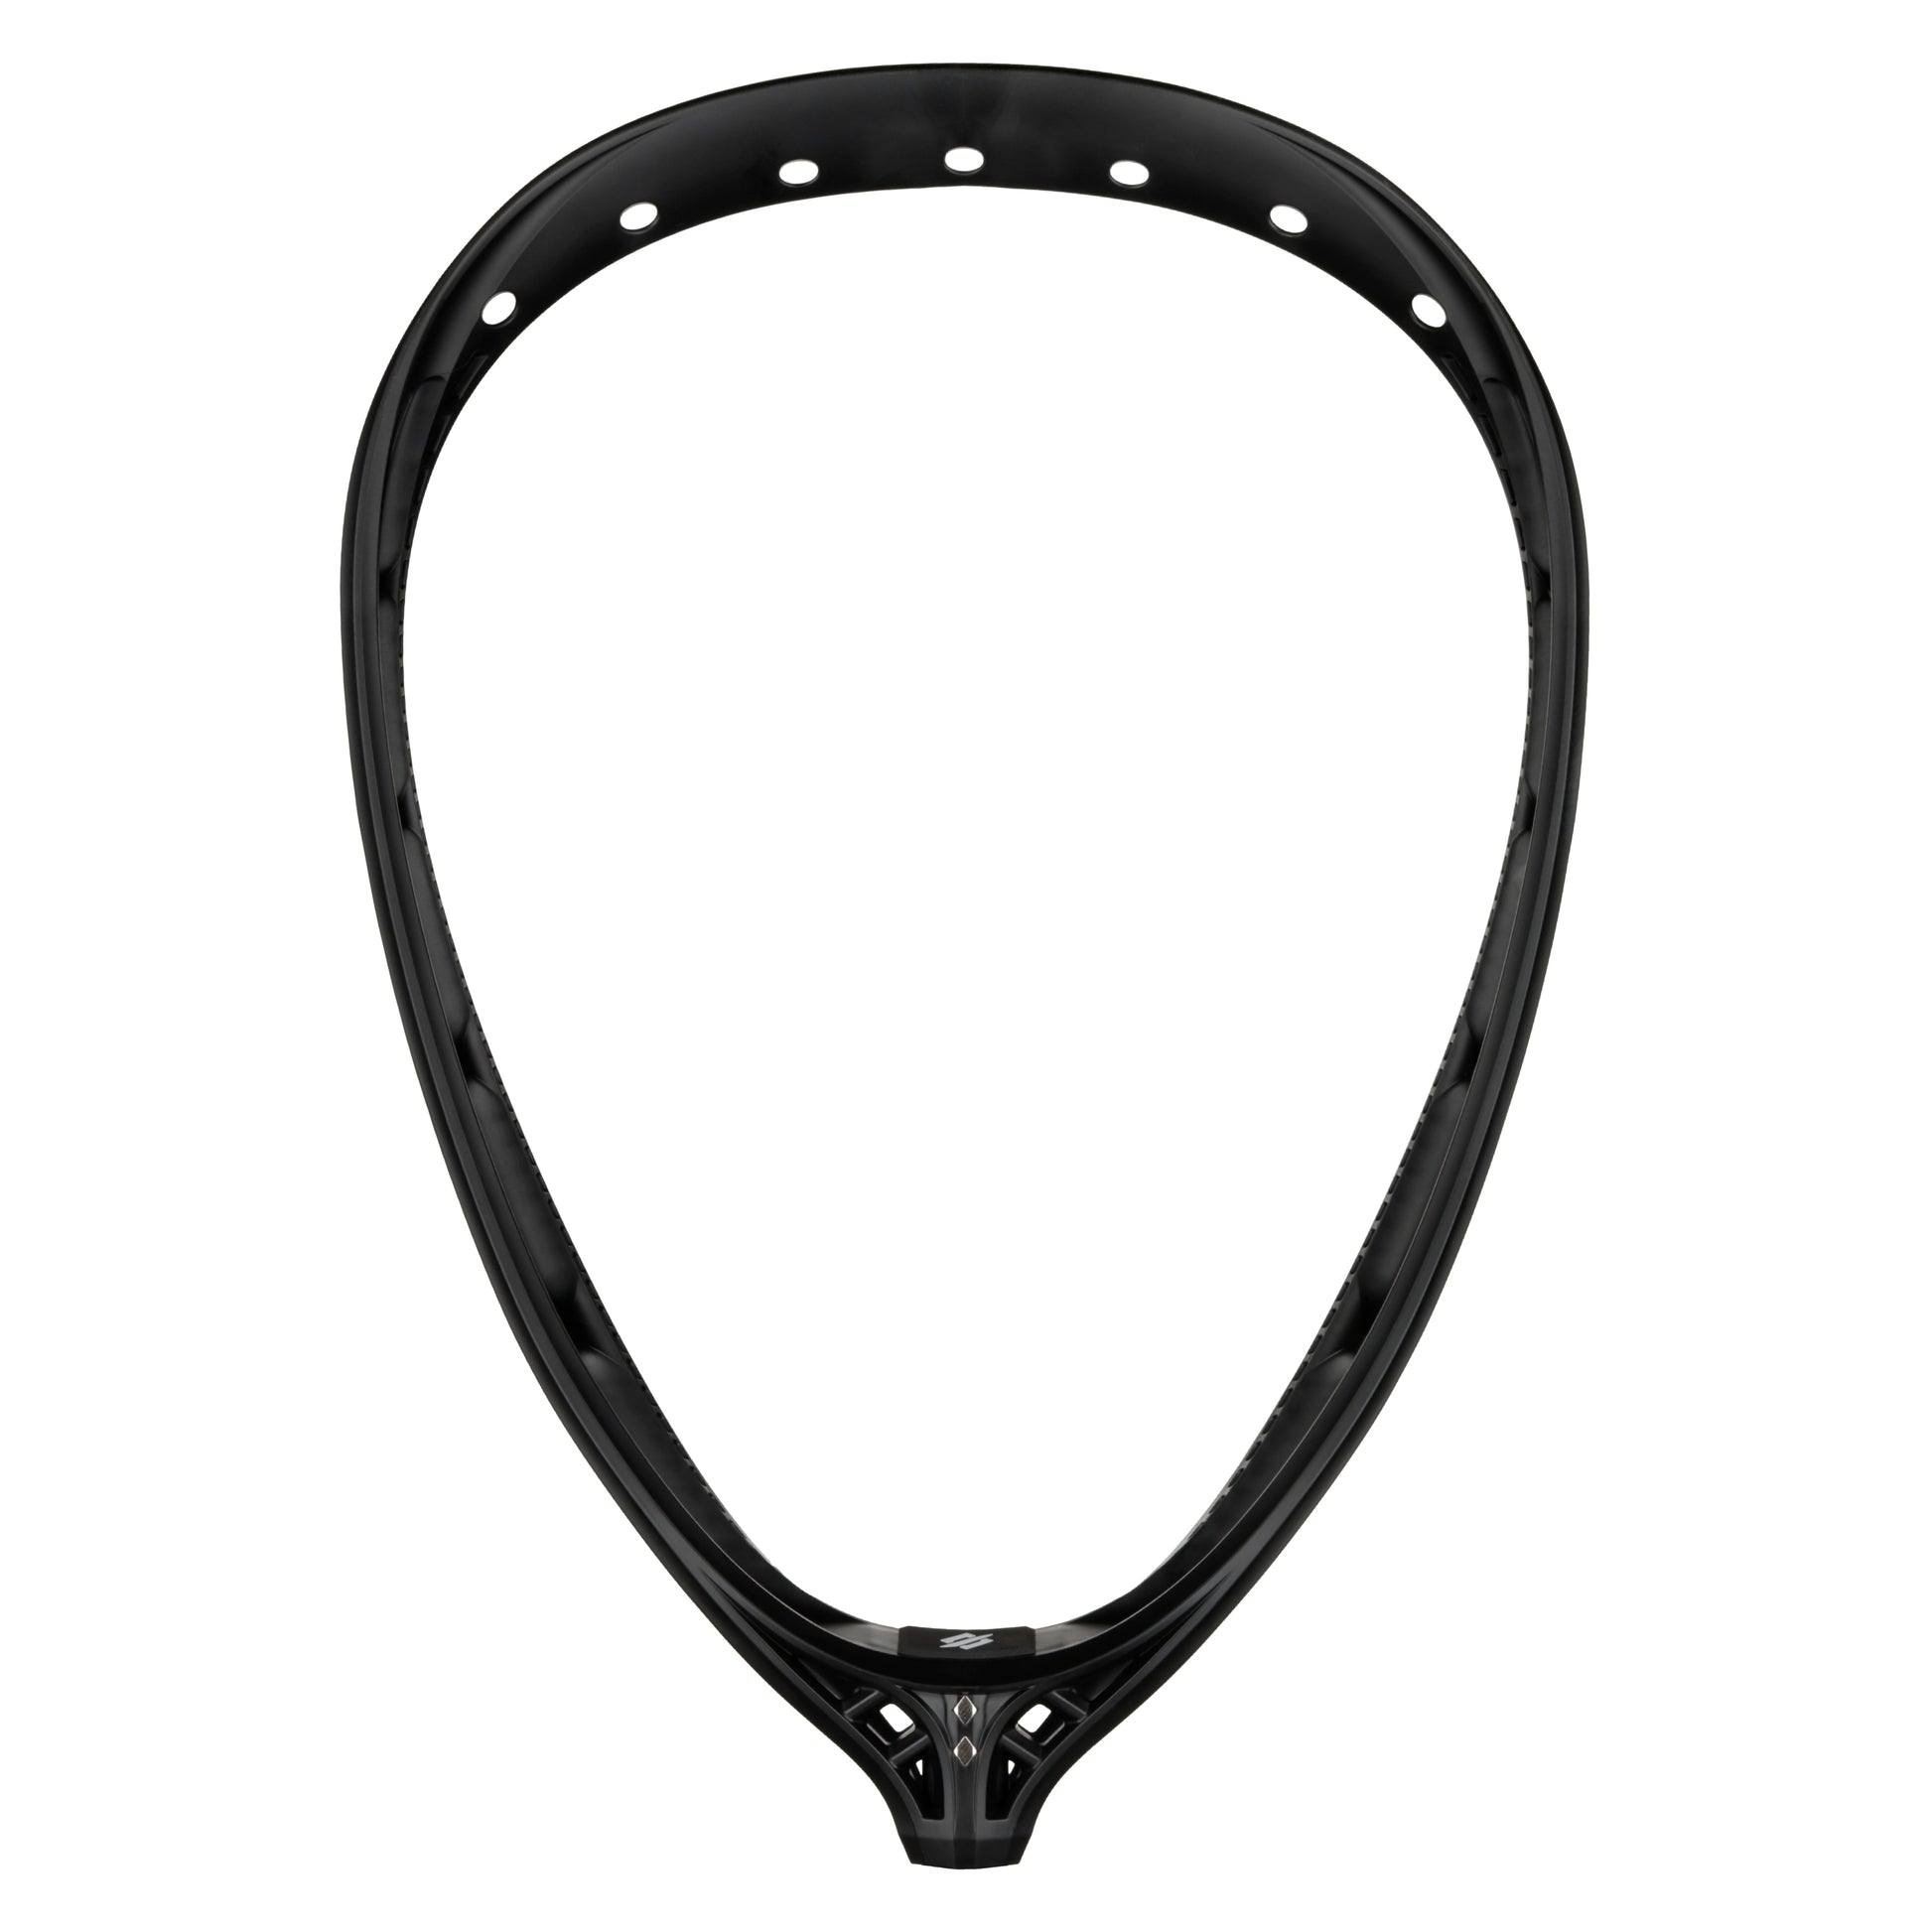 StringKing Mark 2G Goalie Lacrosse Head black